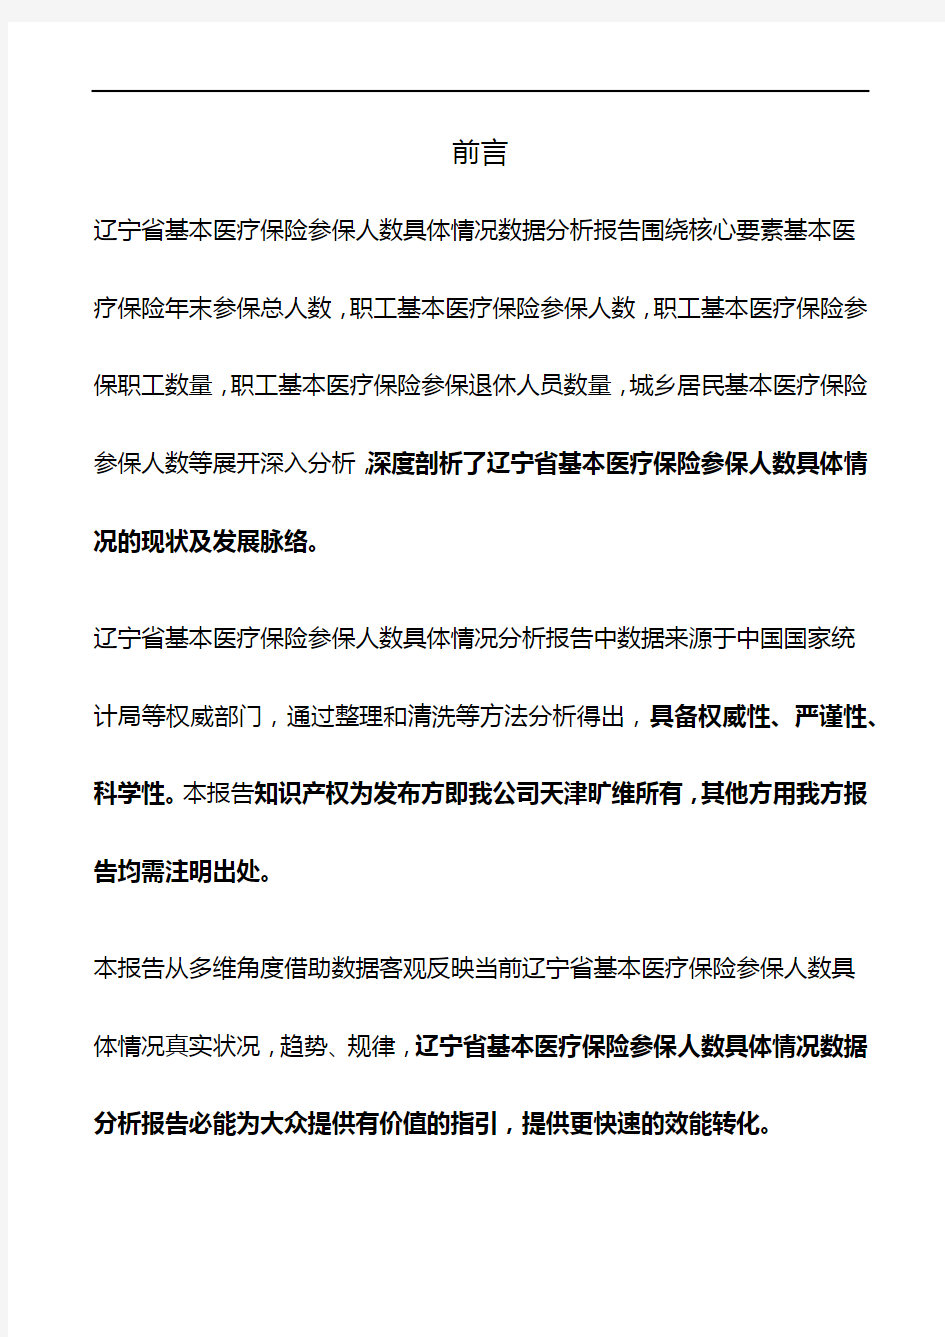 辽宁省基本医疗保险参保人数具体情况3年数据分析报告2019版